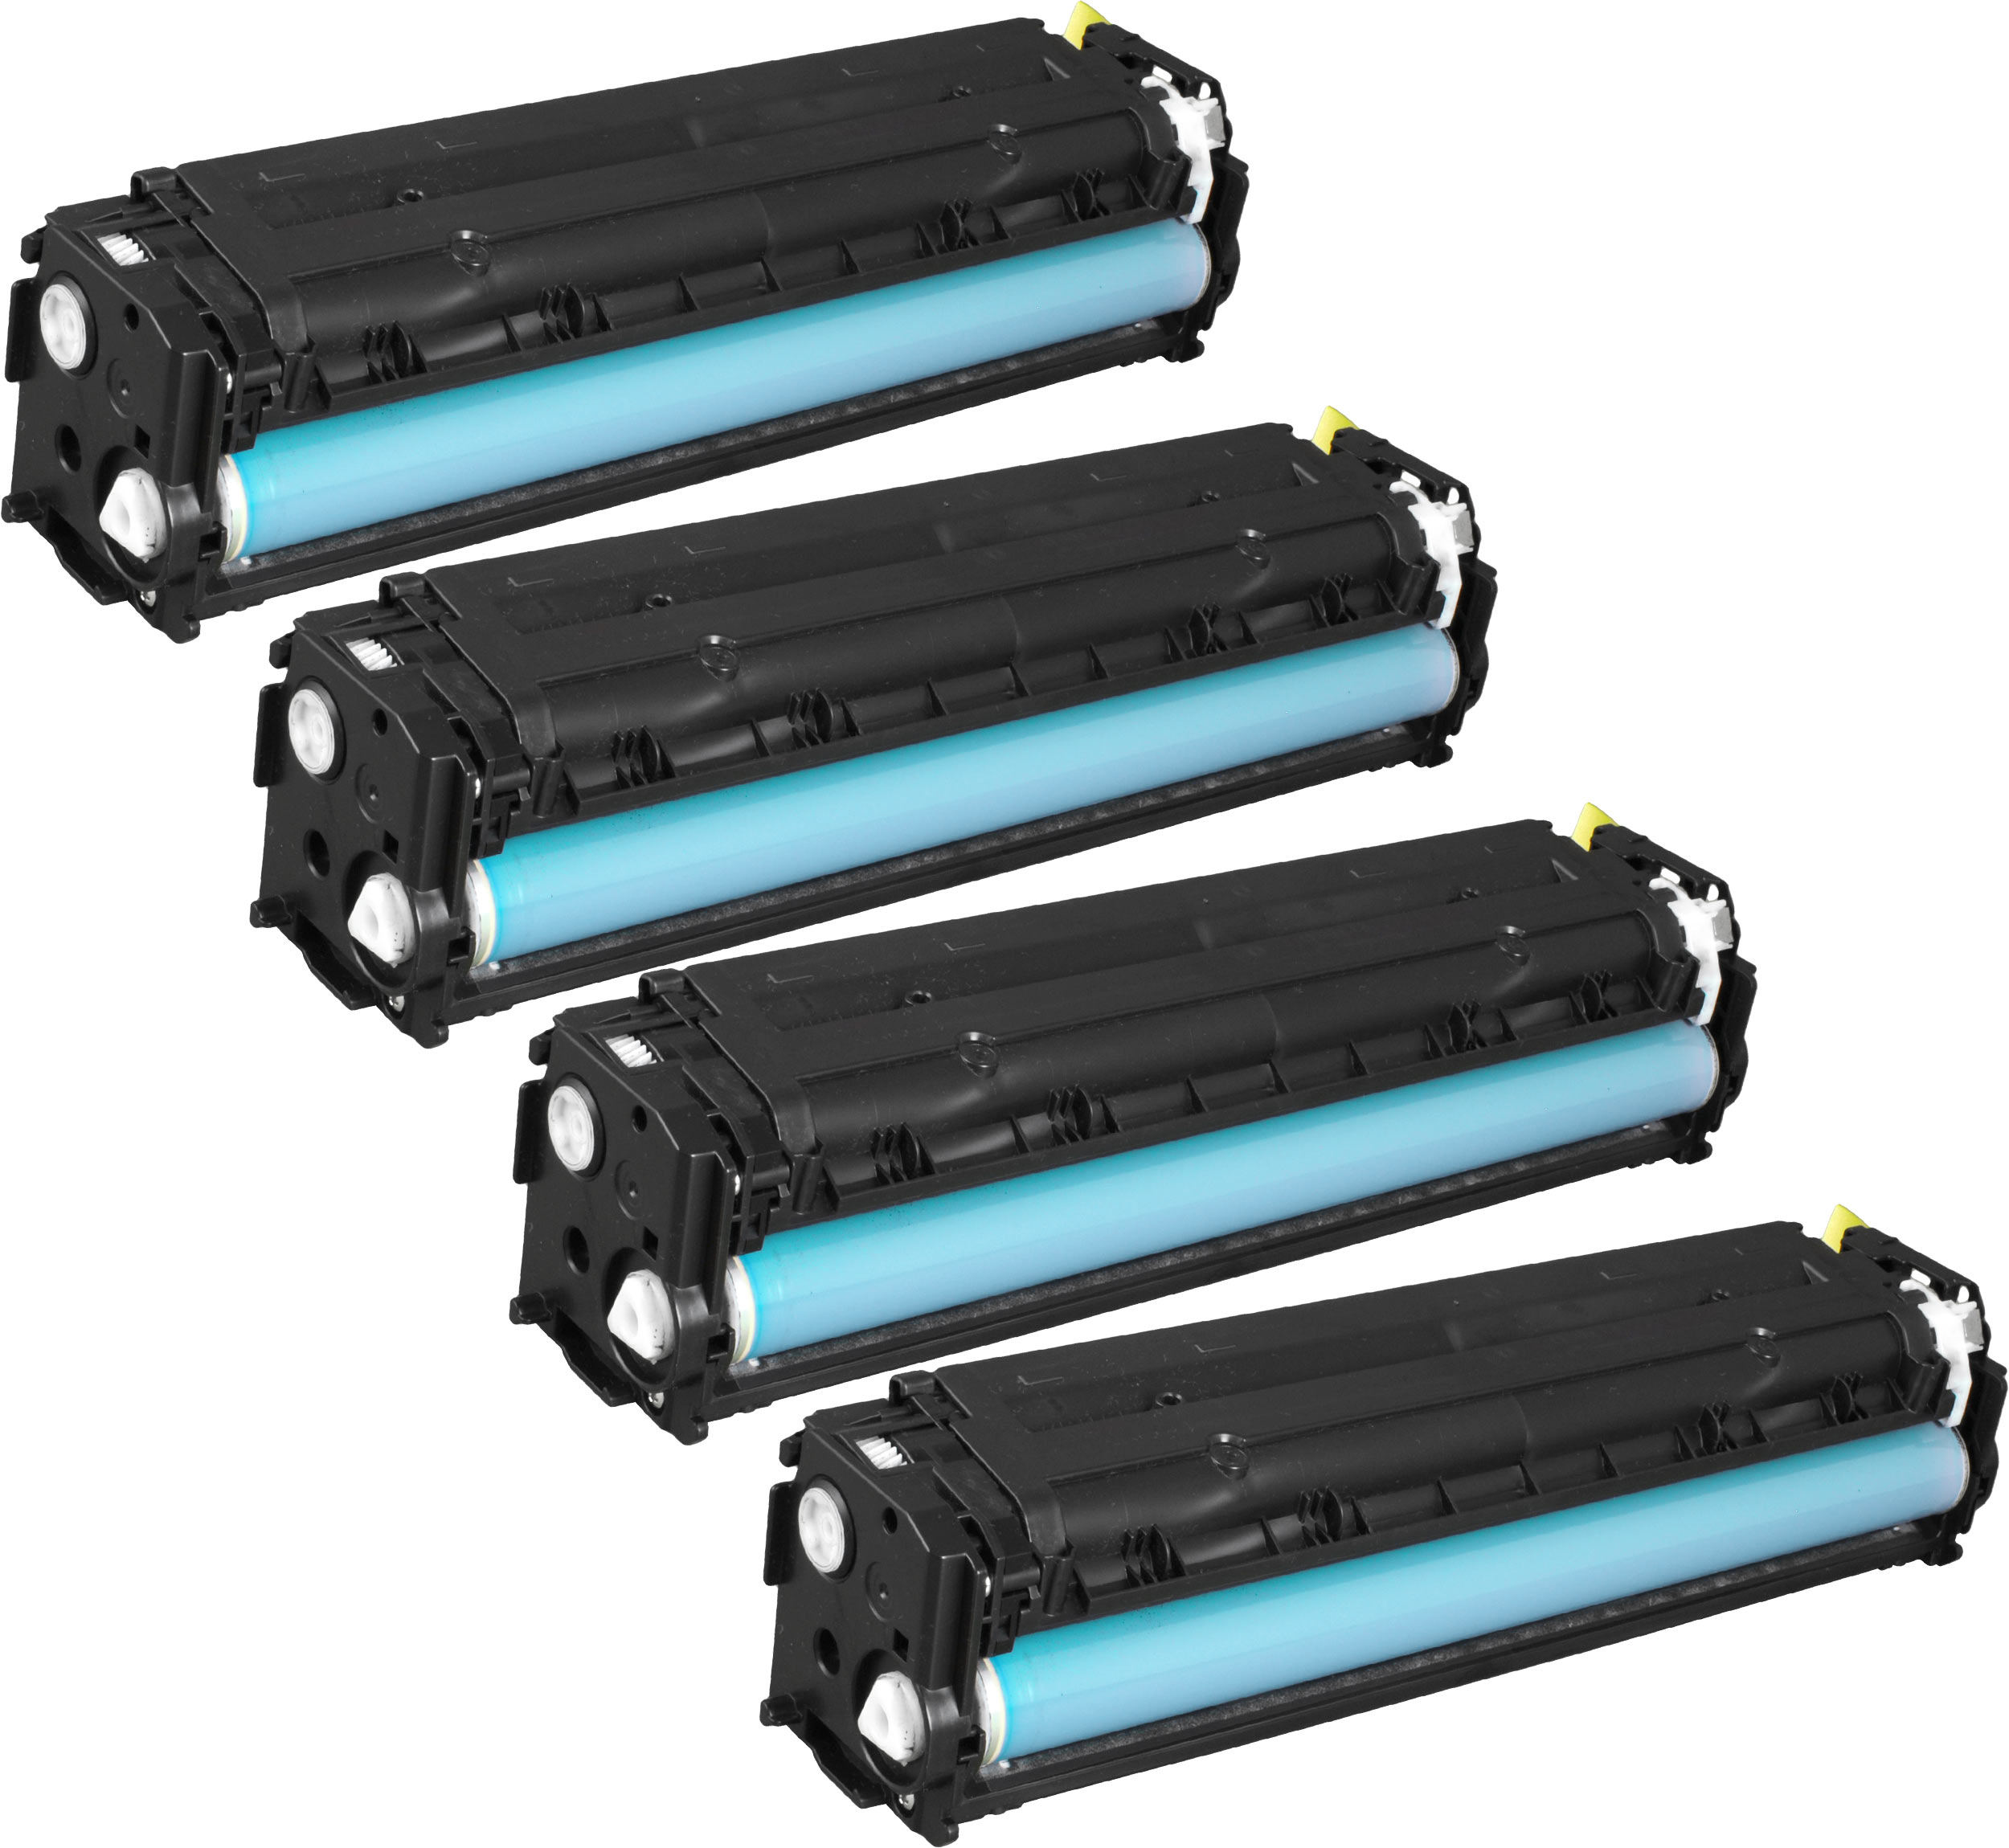 4 Ampertec Toner für HP CF210X+11A+12A+13A  4-farbig